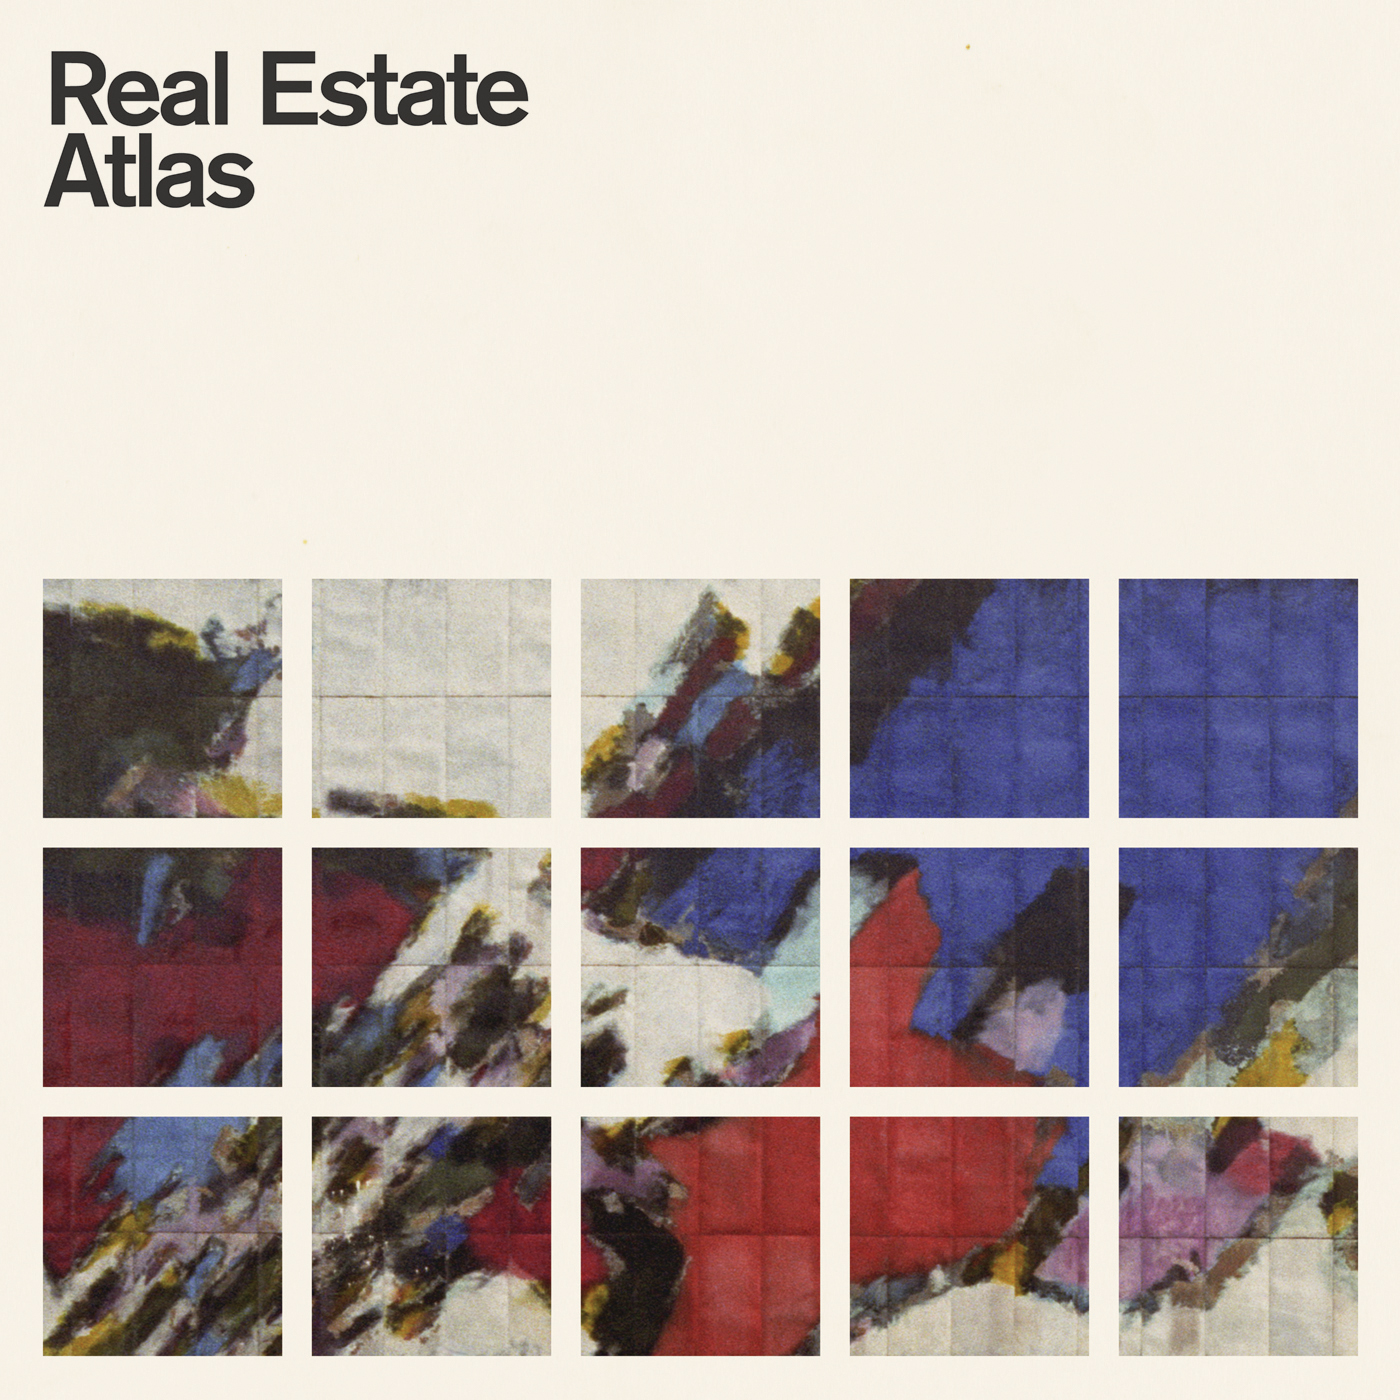 Real Estate Announce New Album, “Atlas”